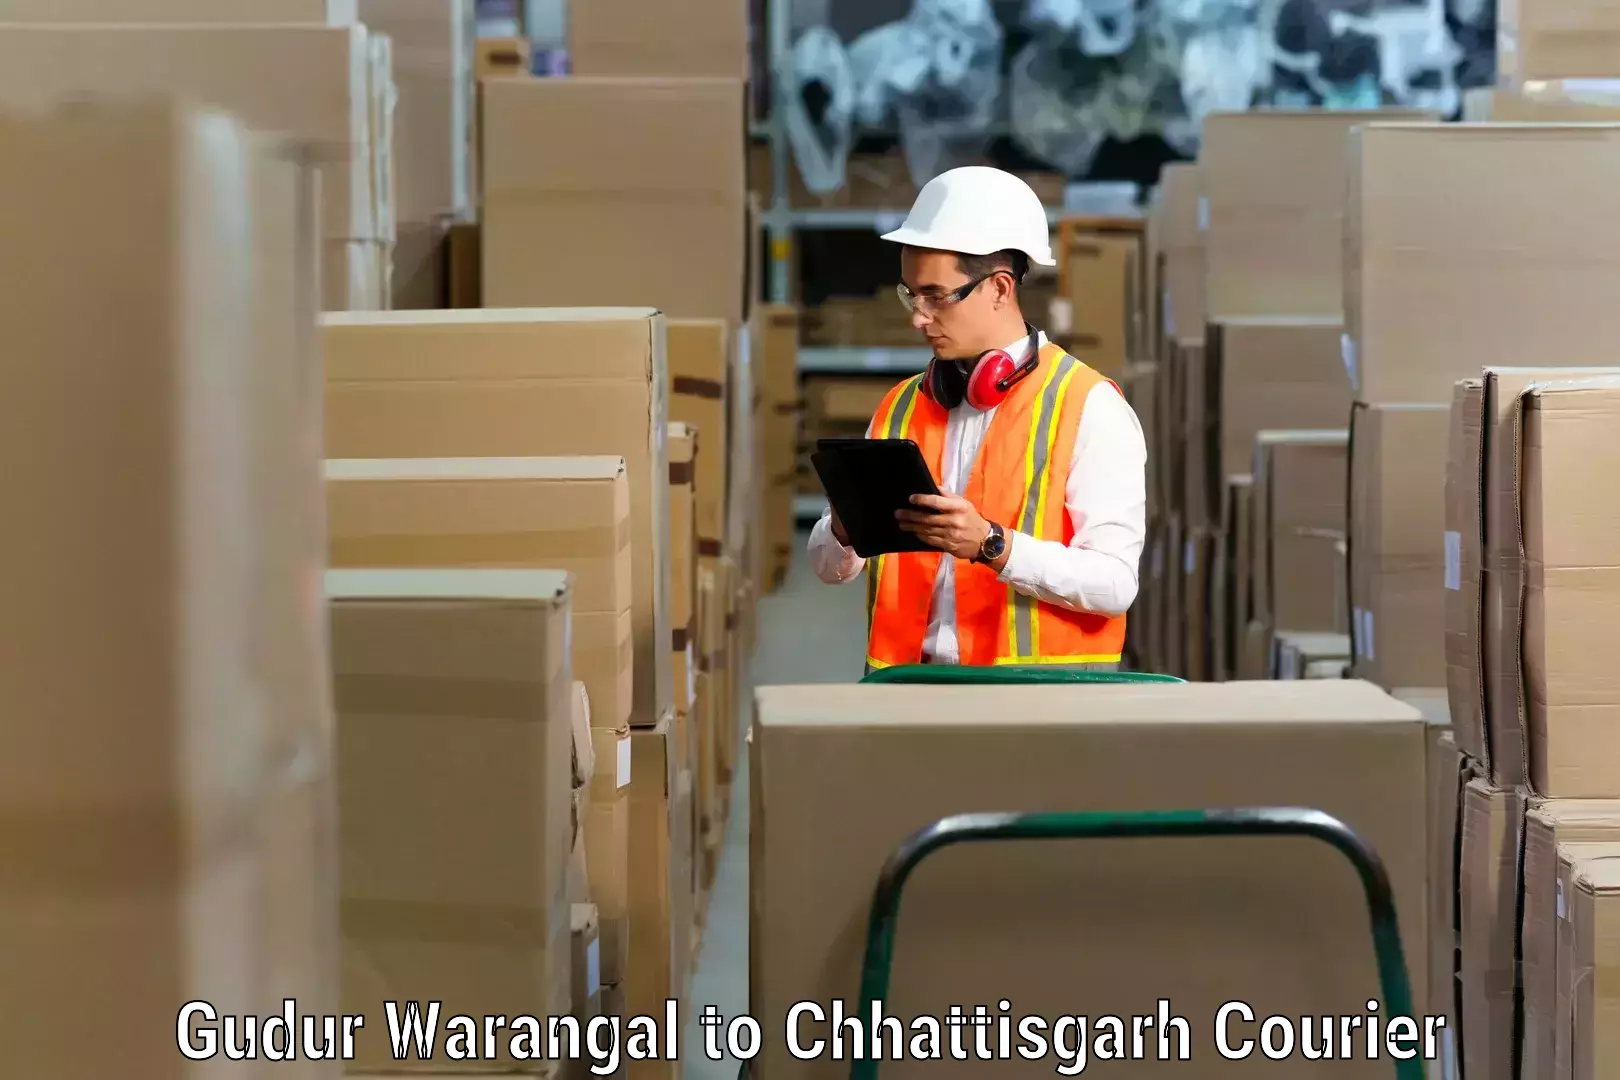 Home relocation experts Gudur Warangal to Raigarh Chhattisgarh